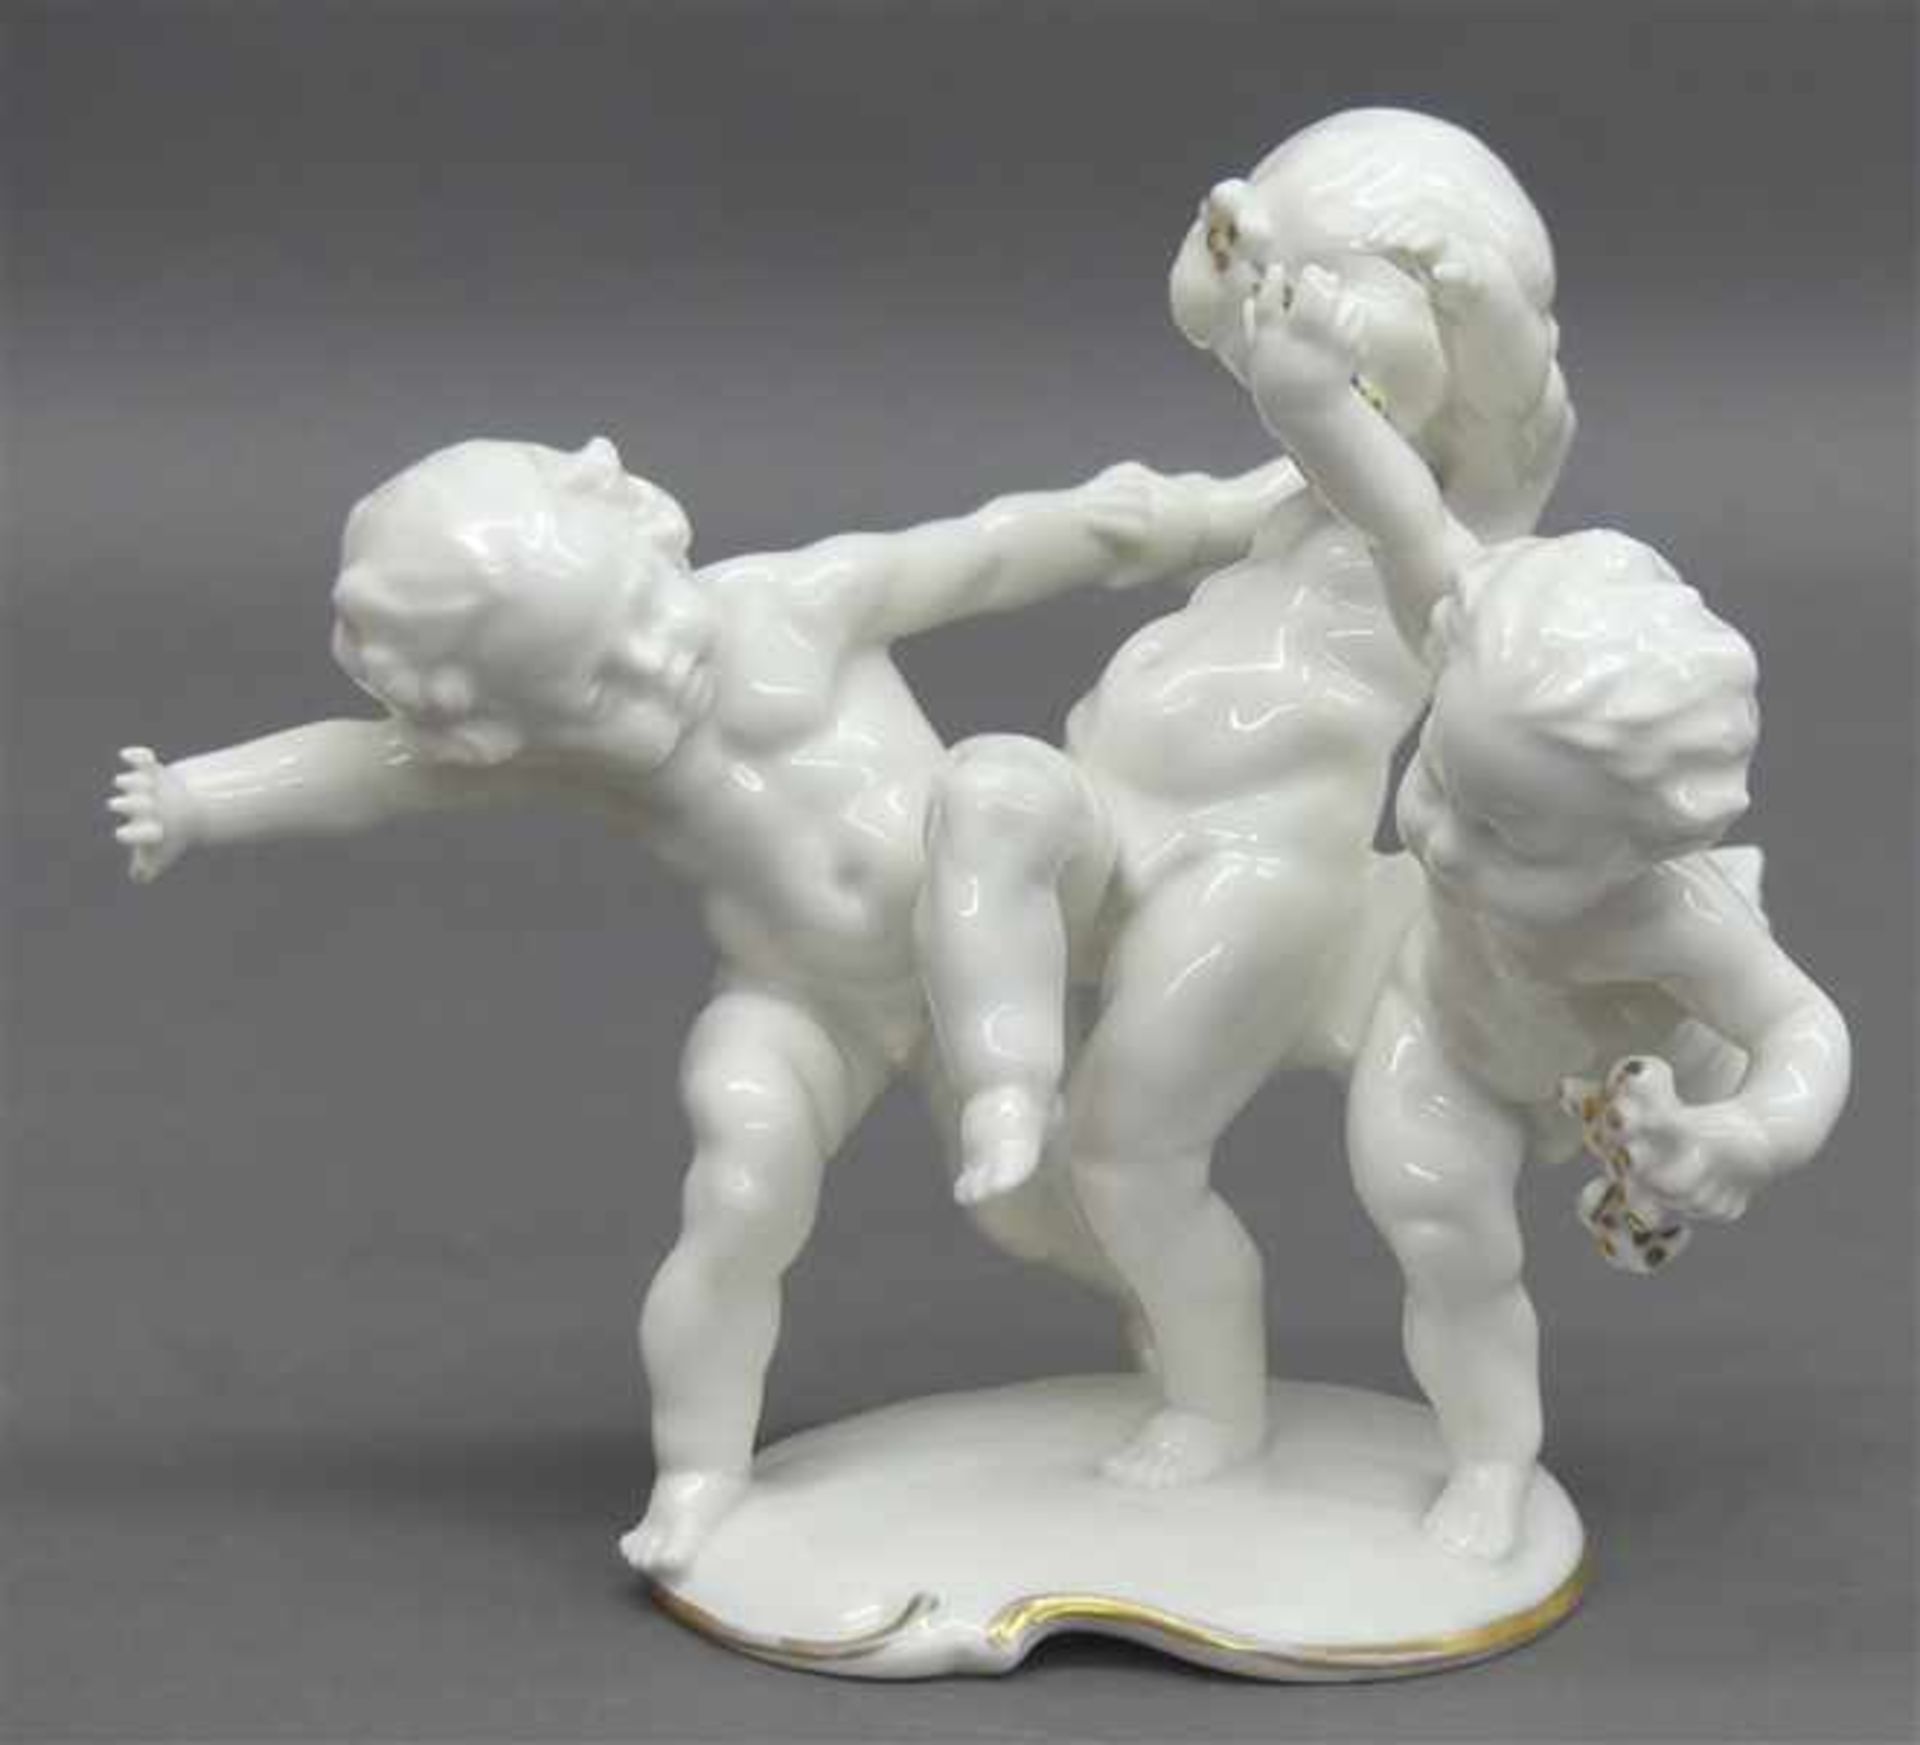 Porzellanskulptur spielende Putti, weiß mit Goldrand, ein Finger beschädigt, grüne Bodenmarke,